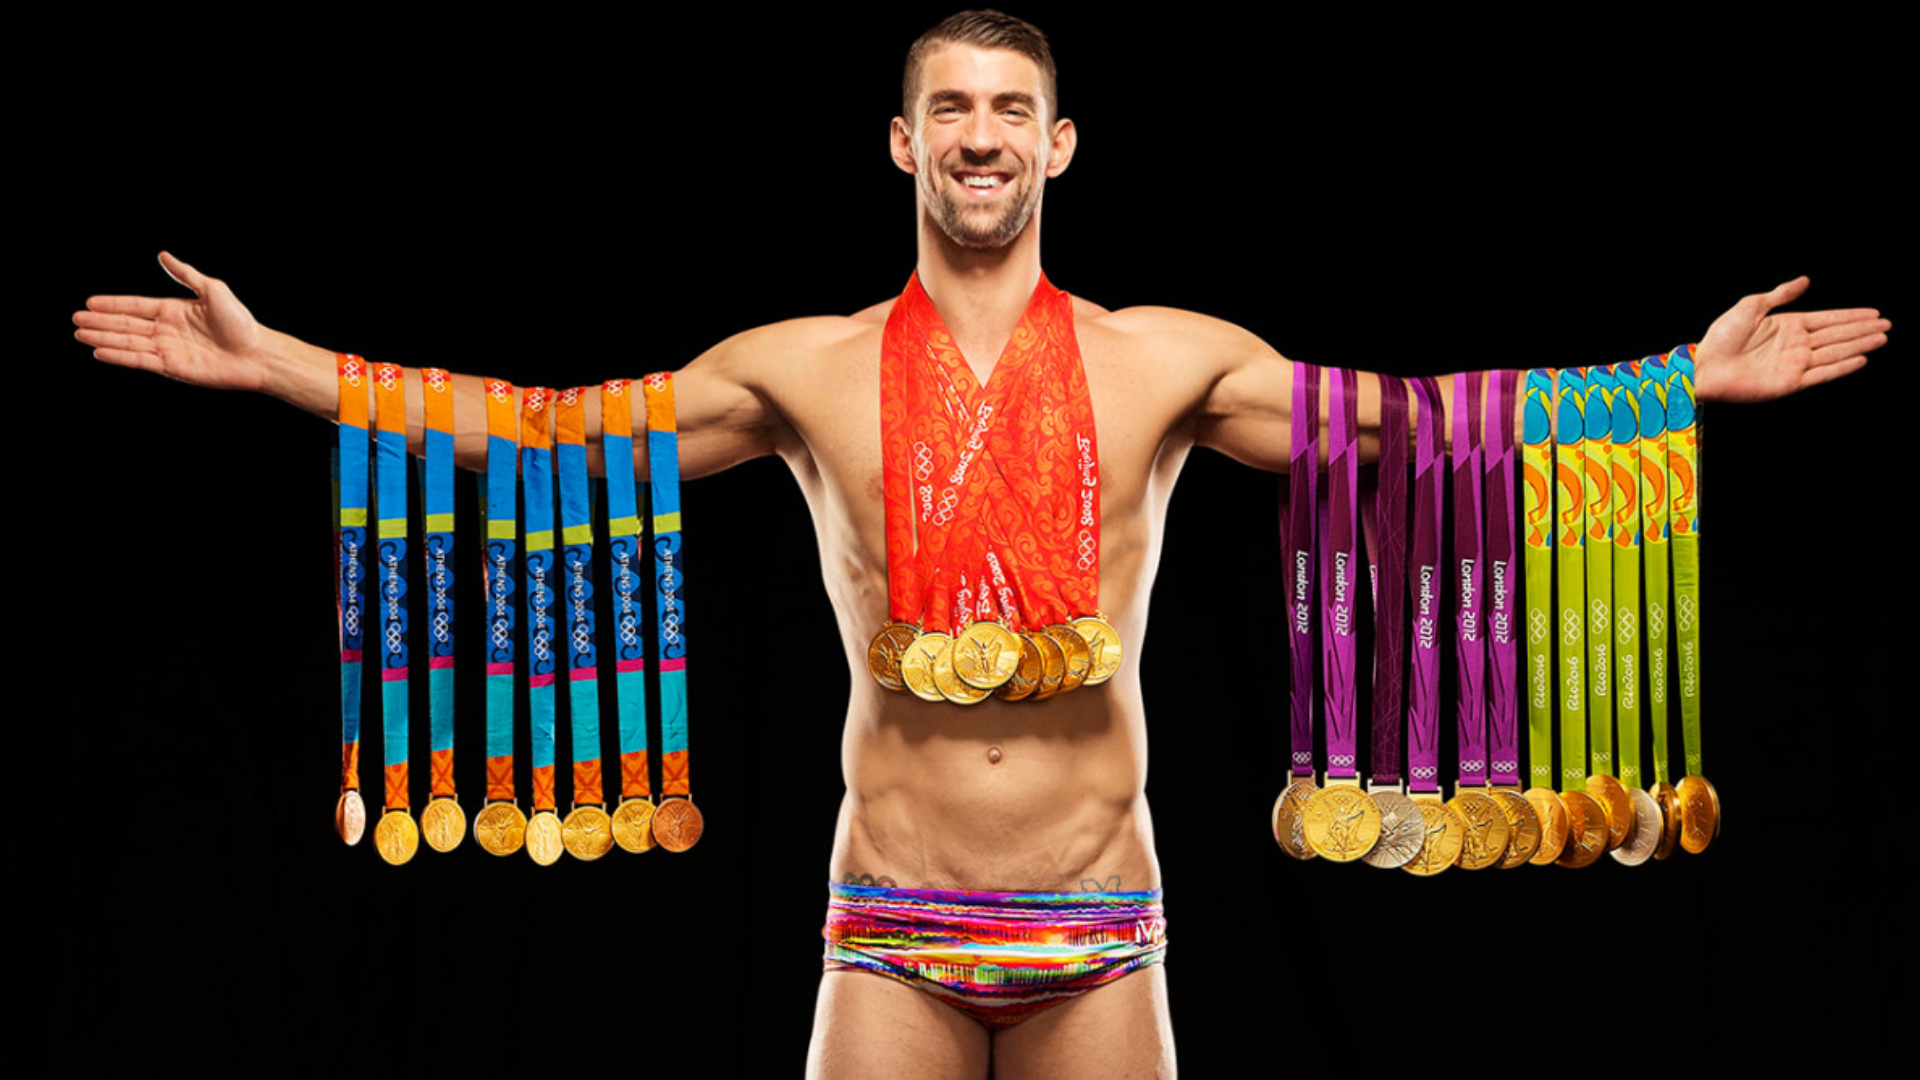 Kazandığı madalyalar ile Michael Phelps görseli.